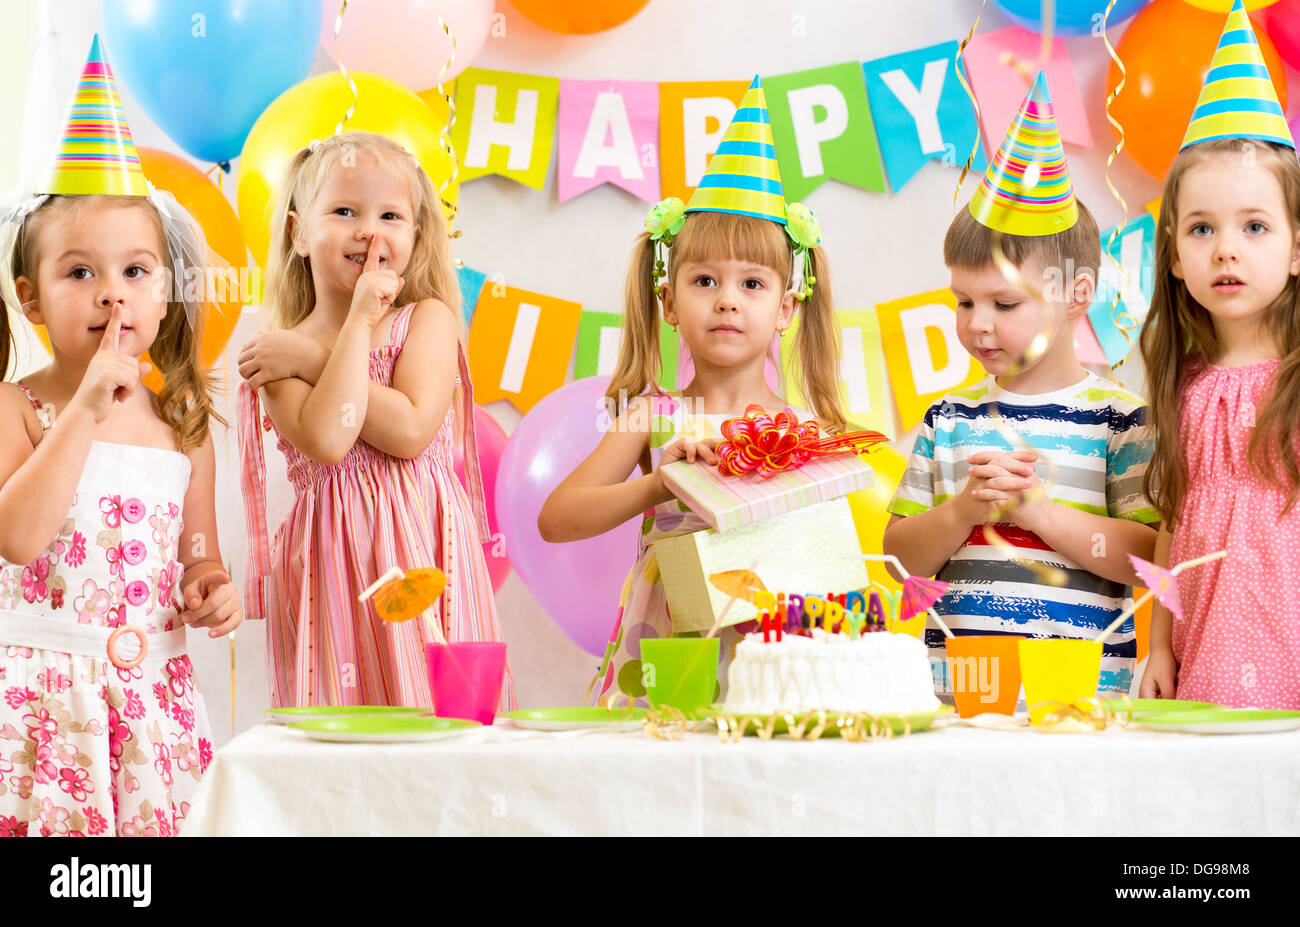 Gruppe von Kindern auf Geburtstagsparty Stockfotografie - Alamy